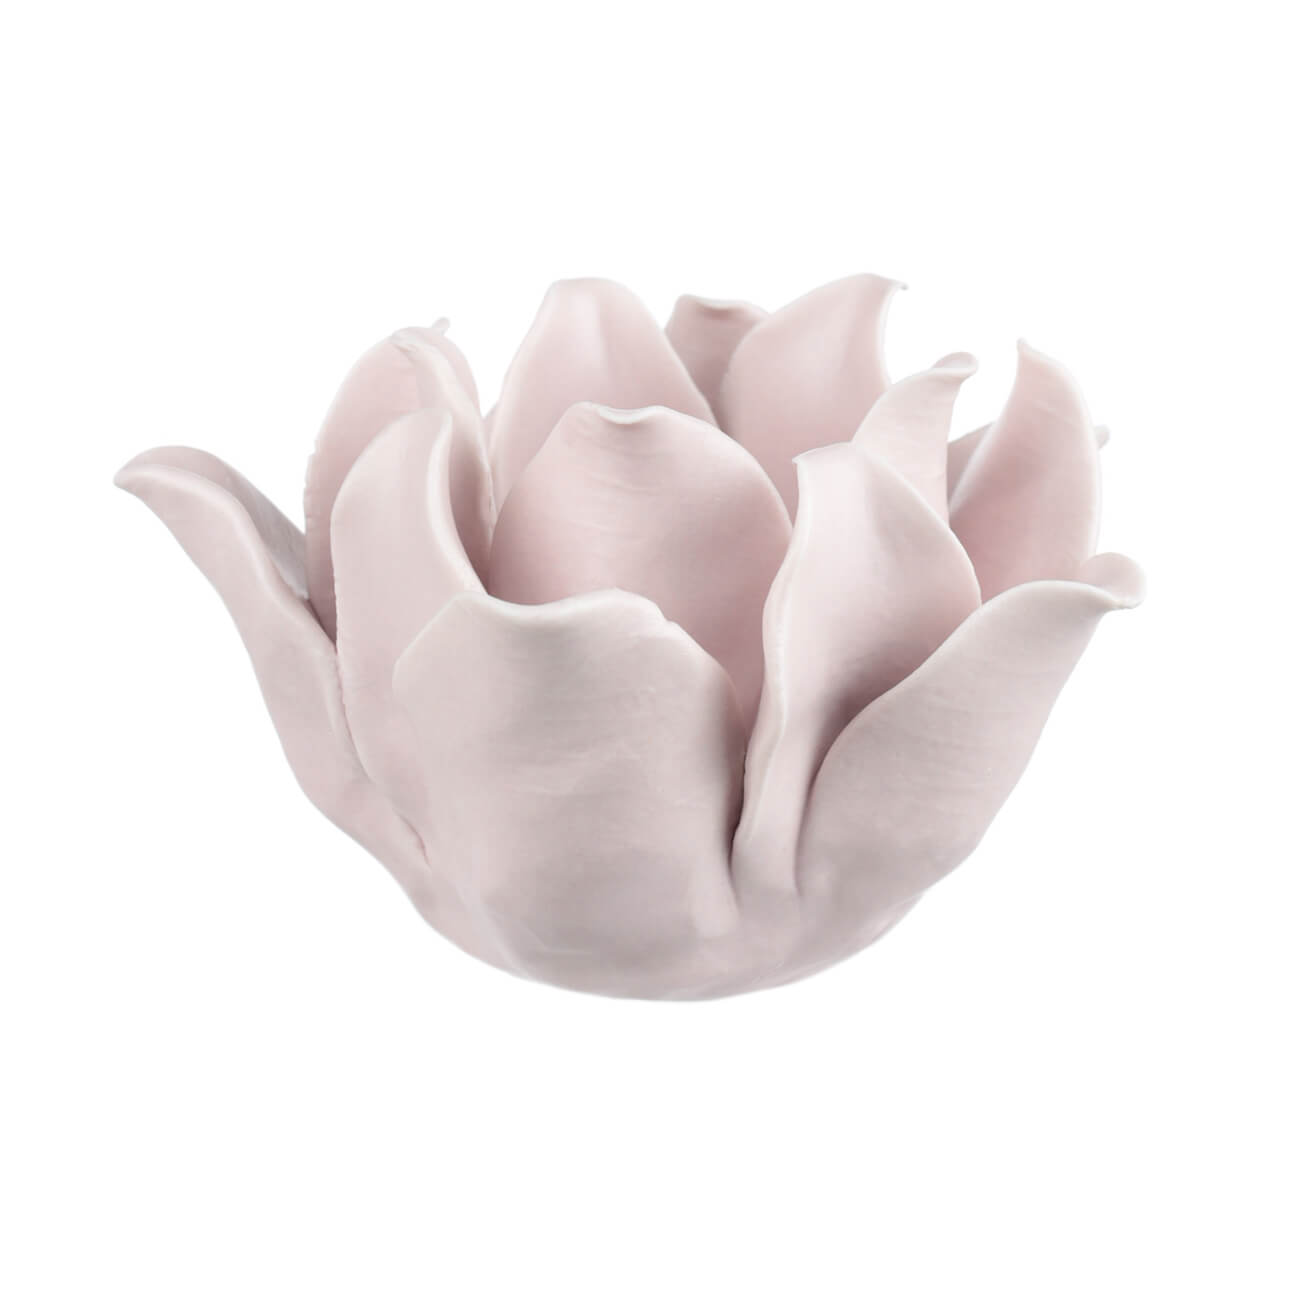 Подсвечник, 10 см, для чайной свечи, фарфор P, розовый, Цветок, Magnolia подсвечник жасмин для чайной свечи 3 5х7 5 см